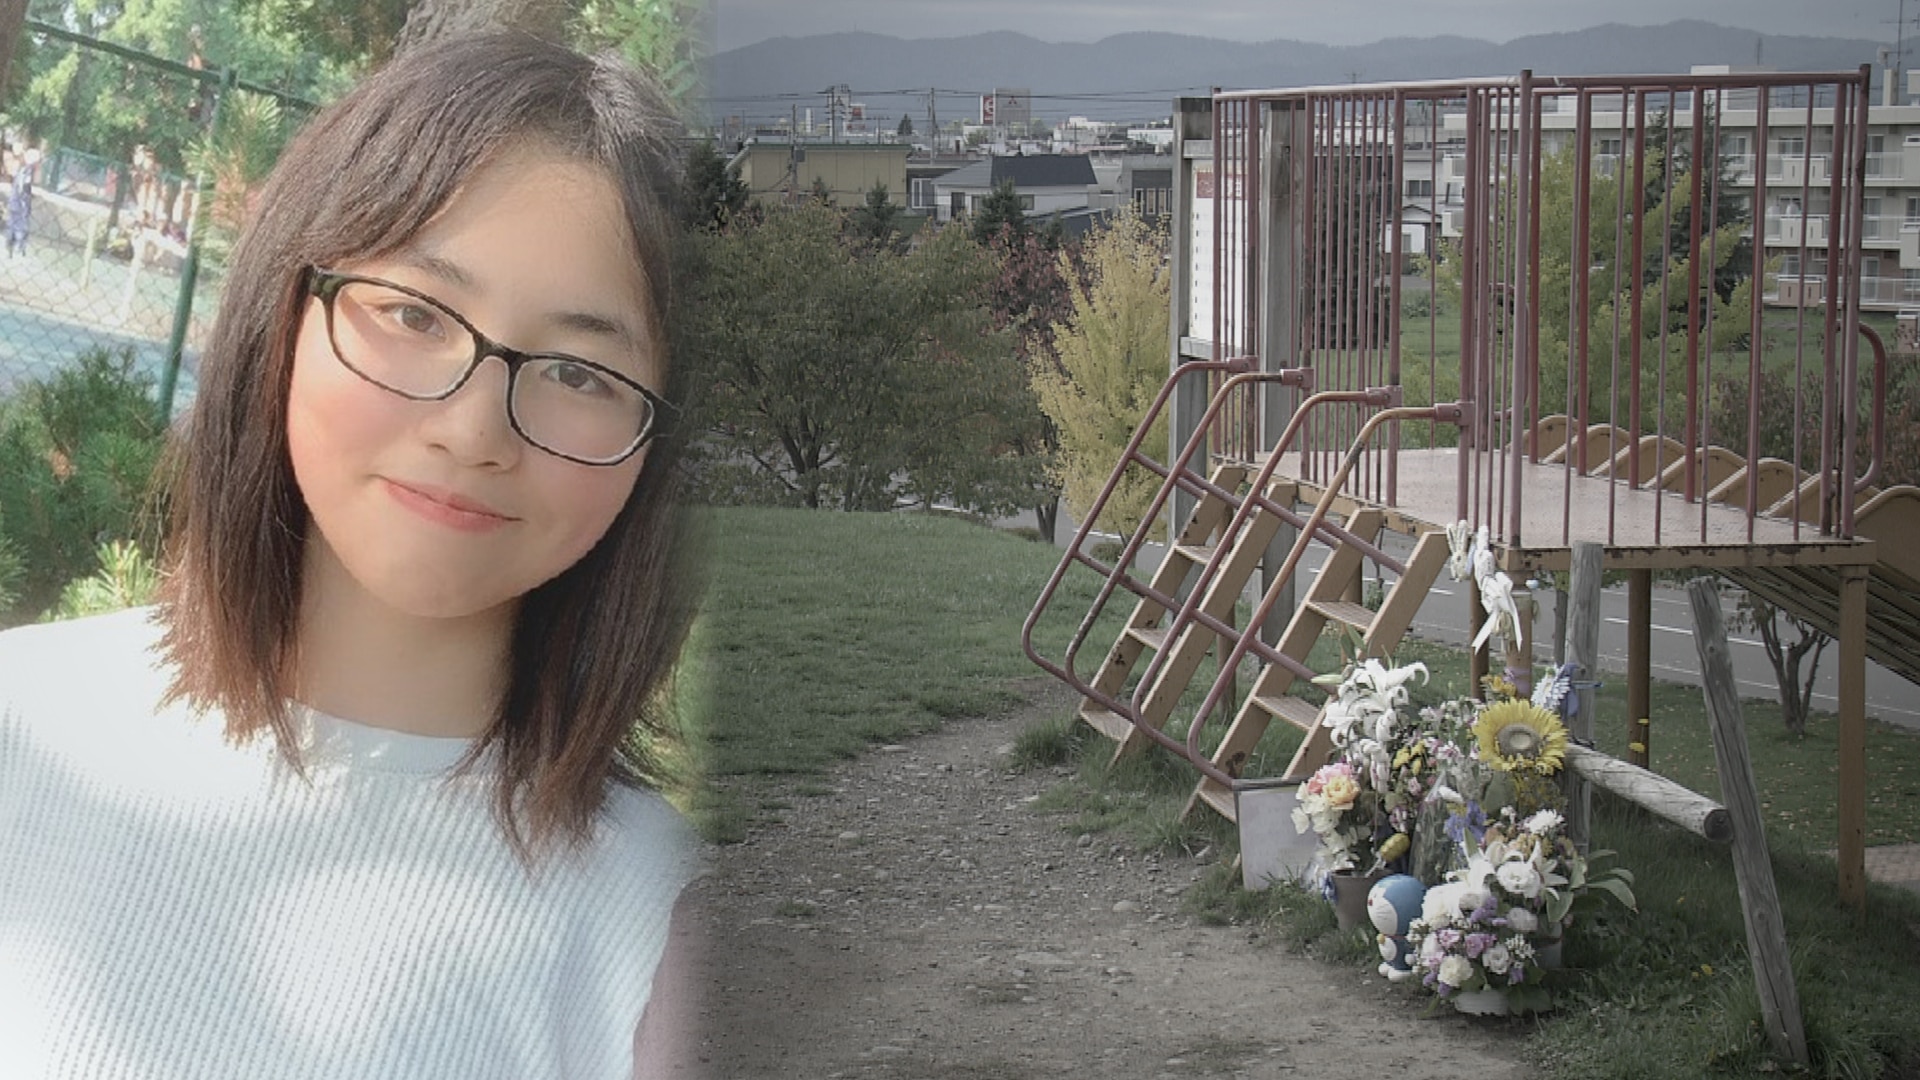 爽彩さんの写真と、遺体が発見された公園の写真